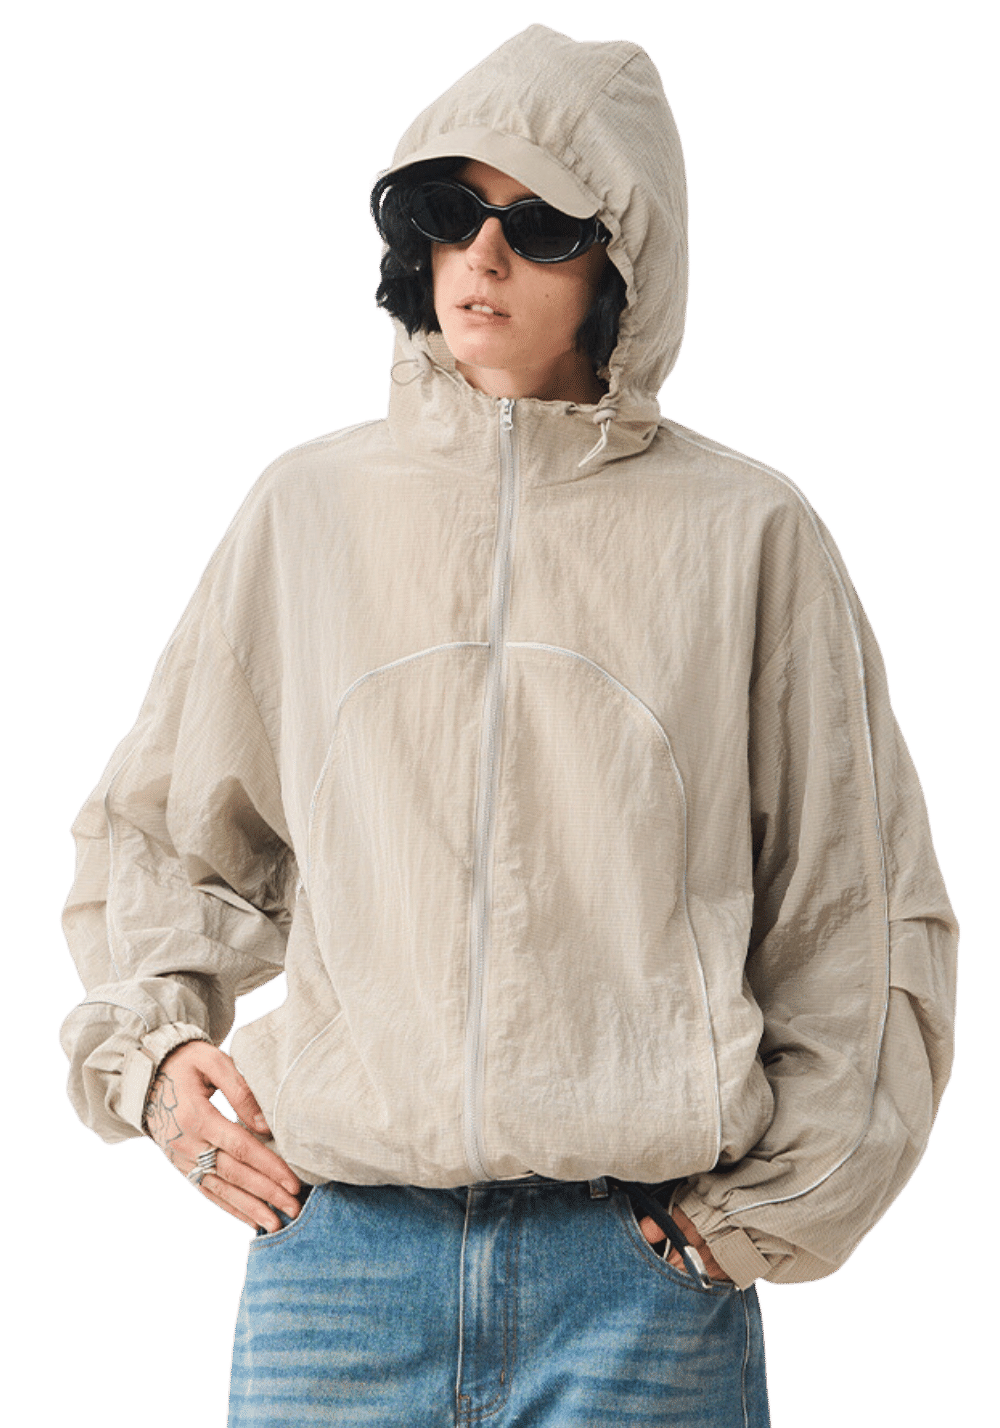 Lightweight Hooded Jacket - PSYLOS 1, Lightweight Hooded Jacket, Jacket, MODITEC, PSYLOS 1